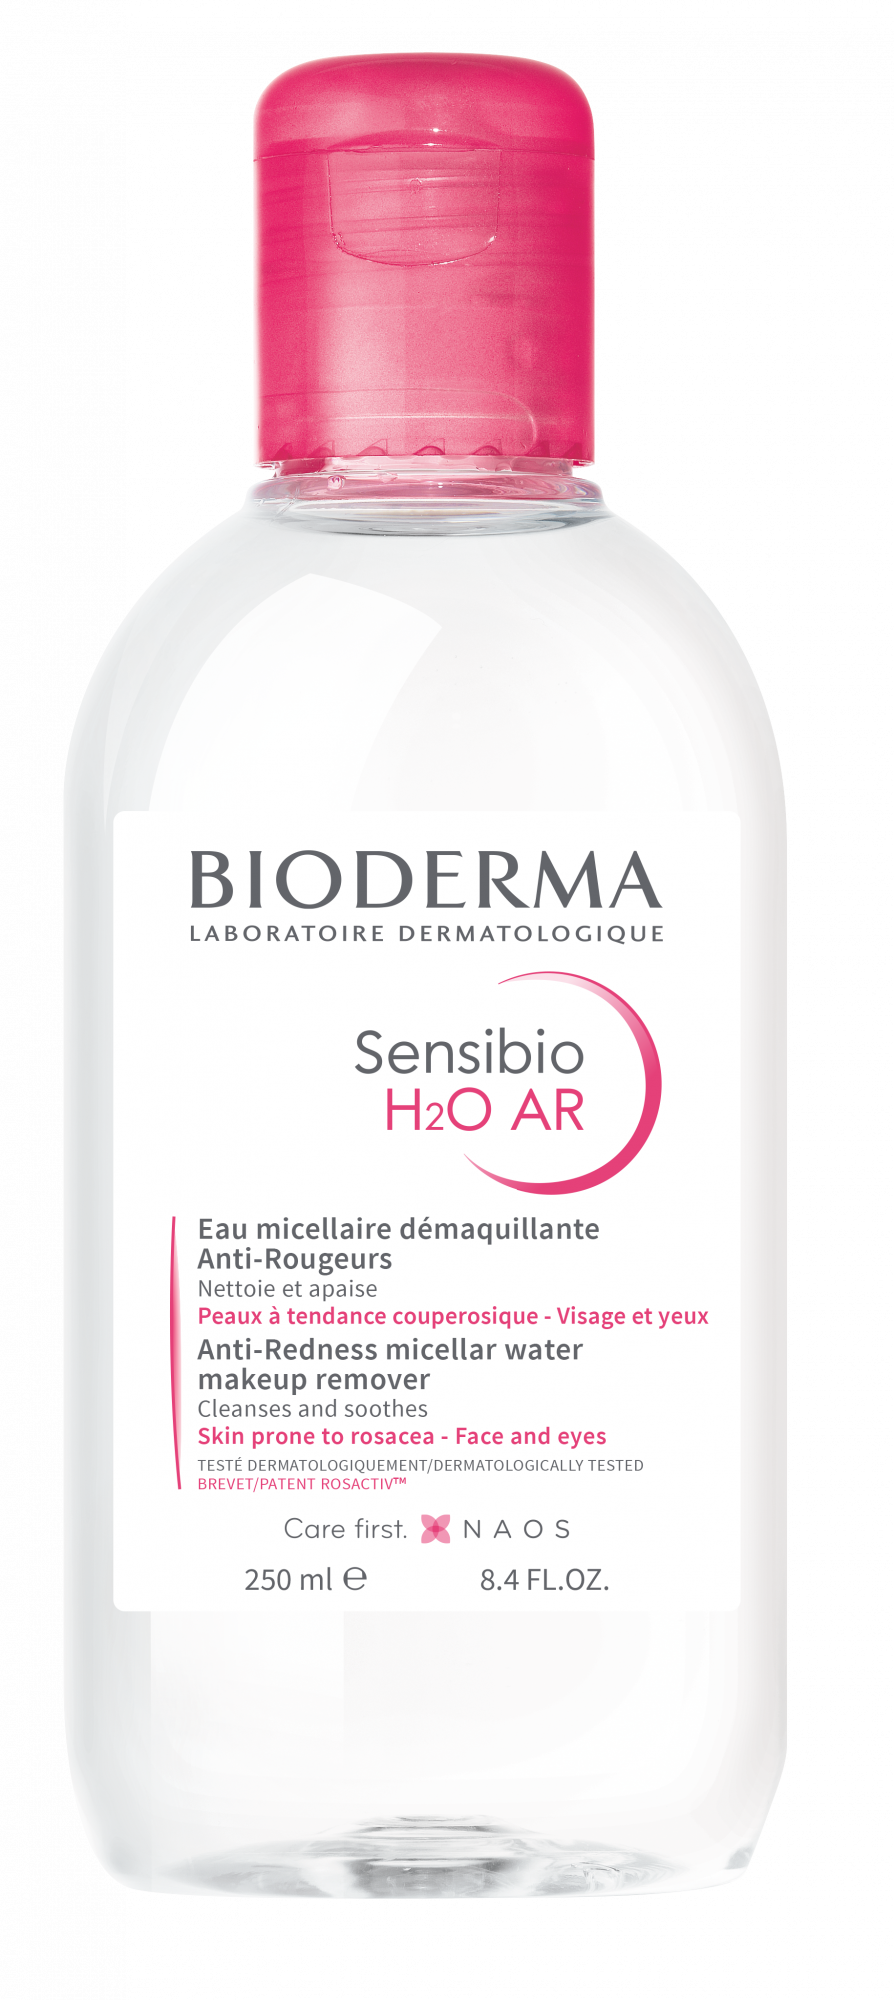 SENSIBIO H2O AR, Agua micelar limpiadora desmaquillante para piel sensible  o con rojeces